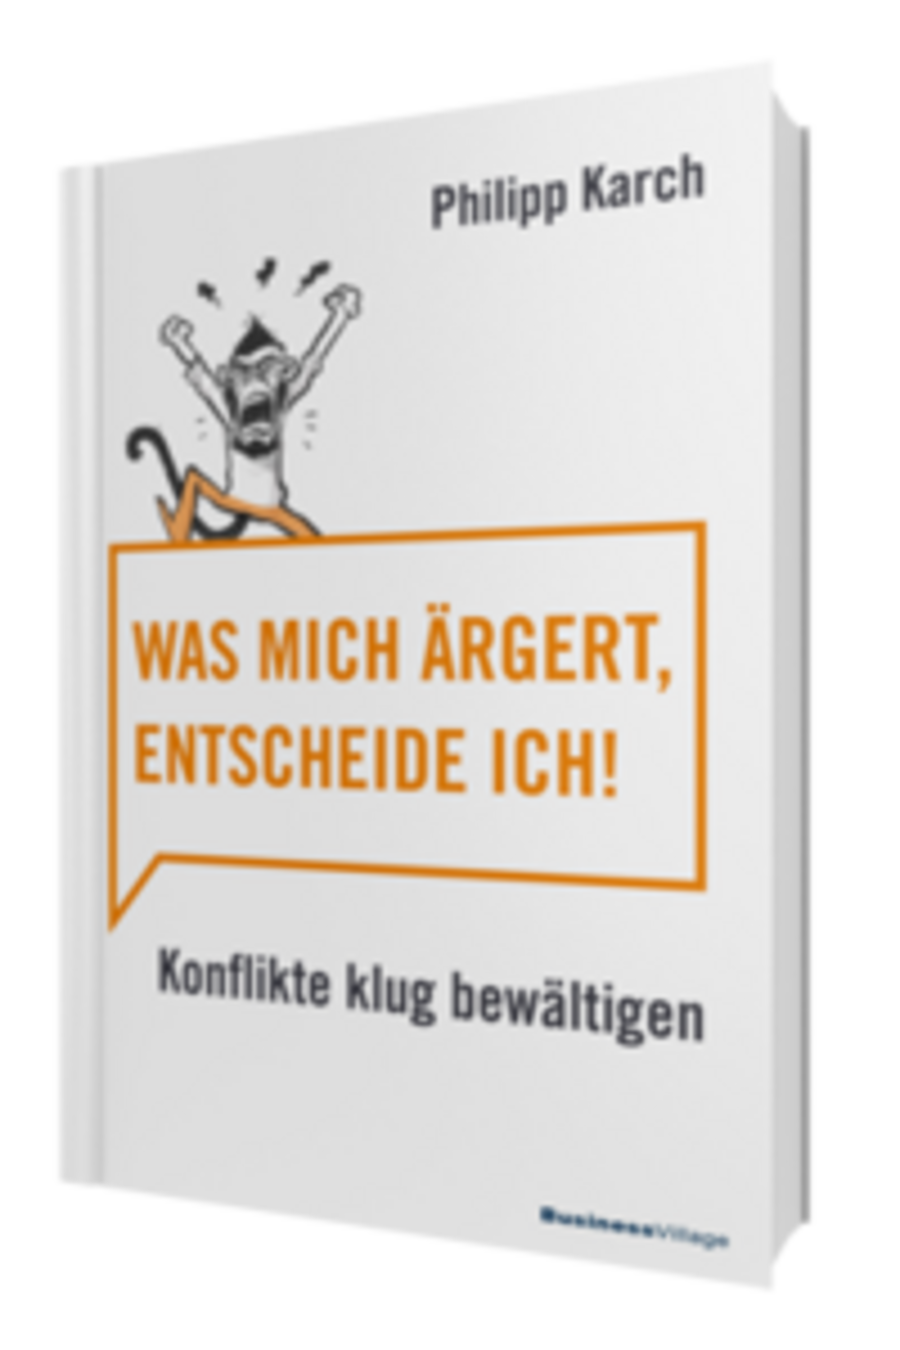 Philipp Karch - "Was mich ärgert, entscheide ich"